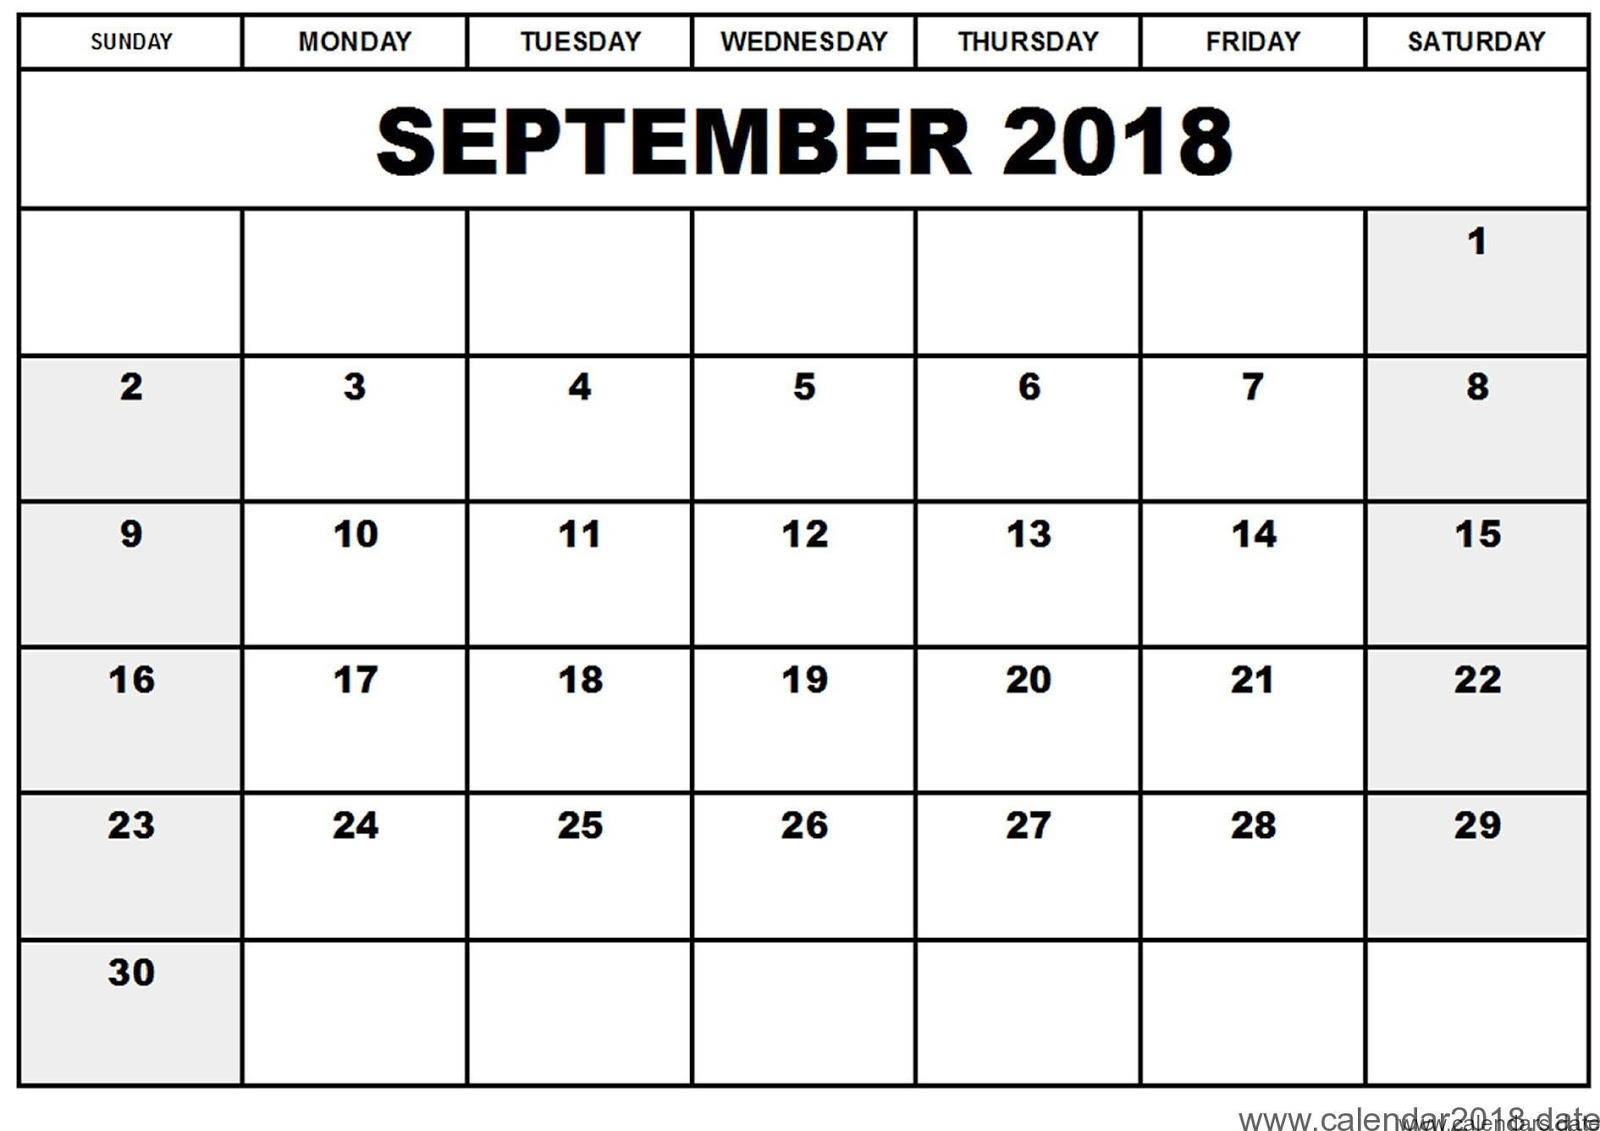 free-printable-calendar-2021-free-printable-calendar-september